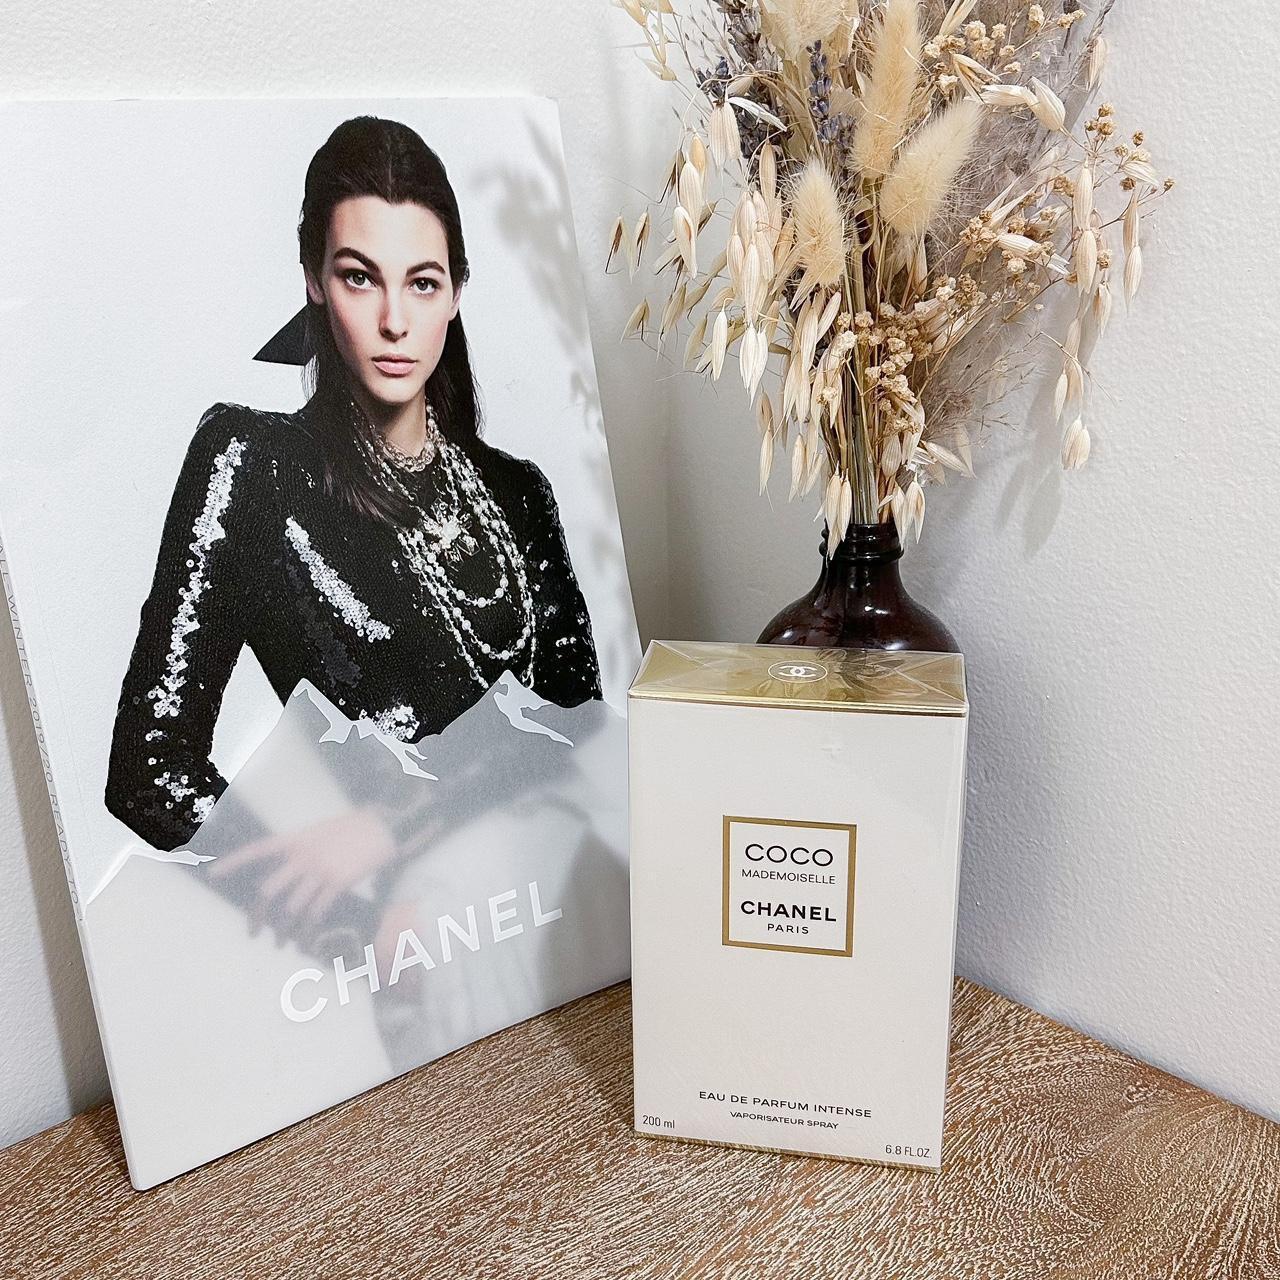 Chanel Coco Mademoiselle Eau de Parfum Intense. - Depop